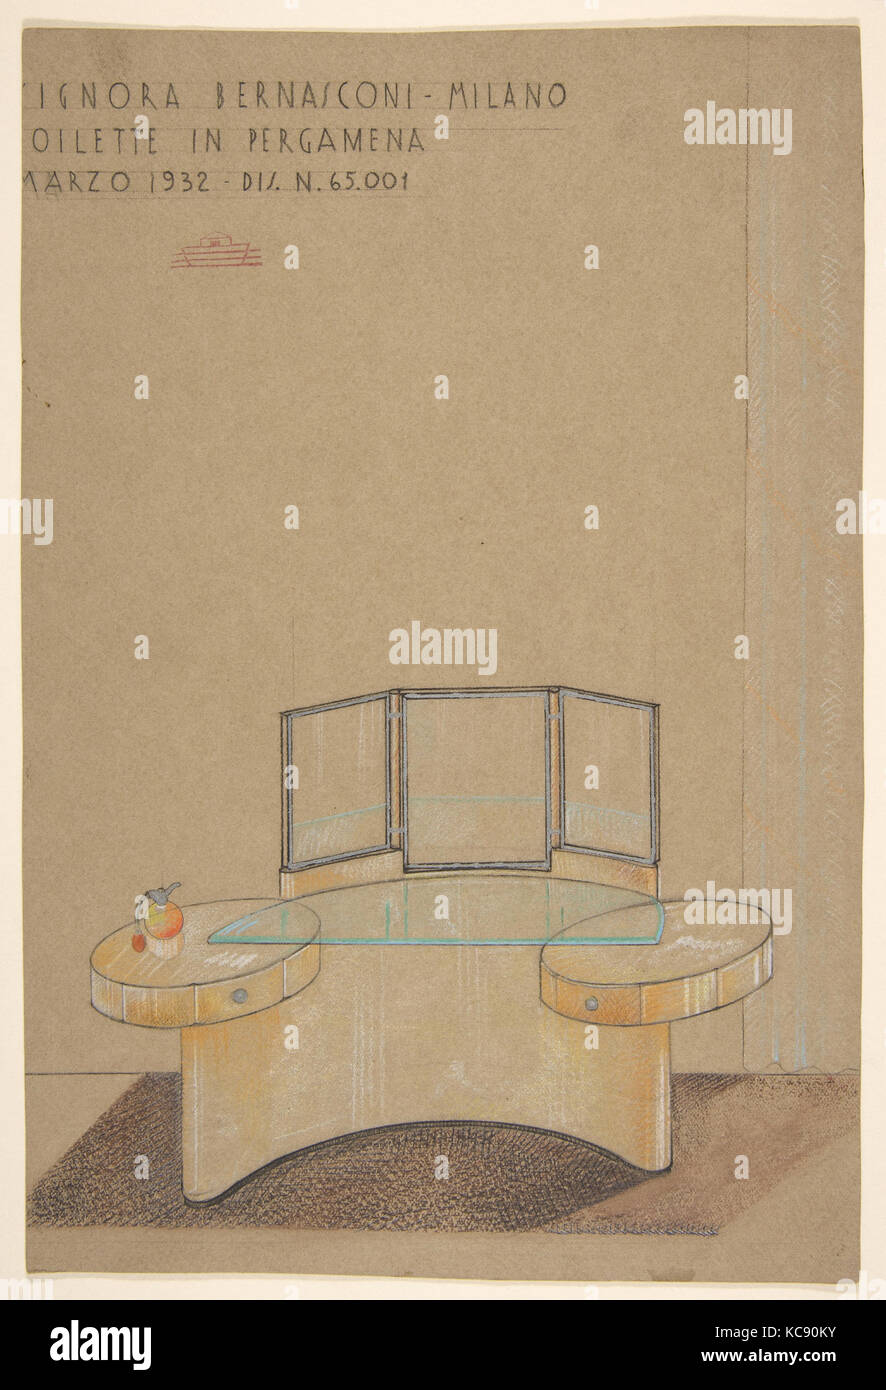 Toilette dans la Pergamena, Signora Bernasconi, Milano...Dis.N. 65,001, Guglielmo Ulrich, 1932 Banque D'Images